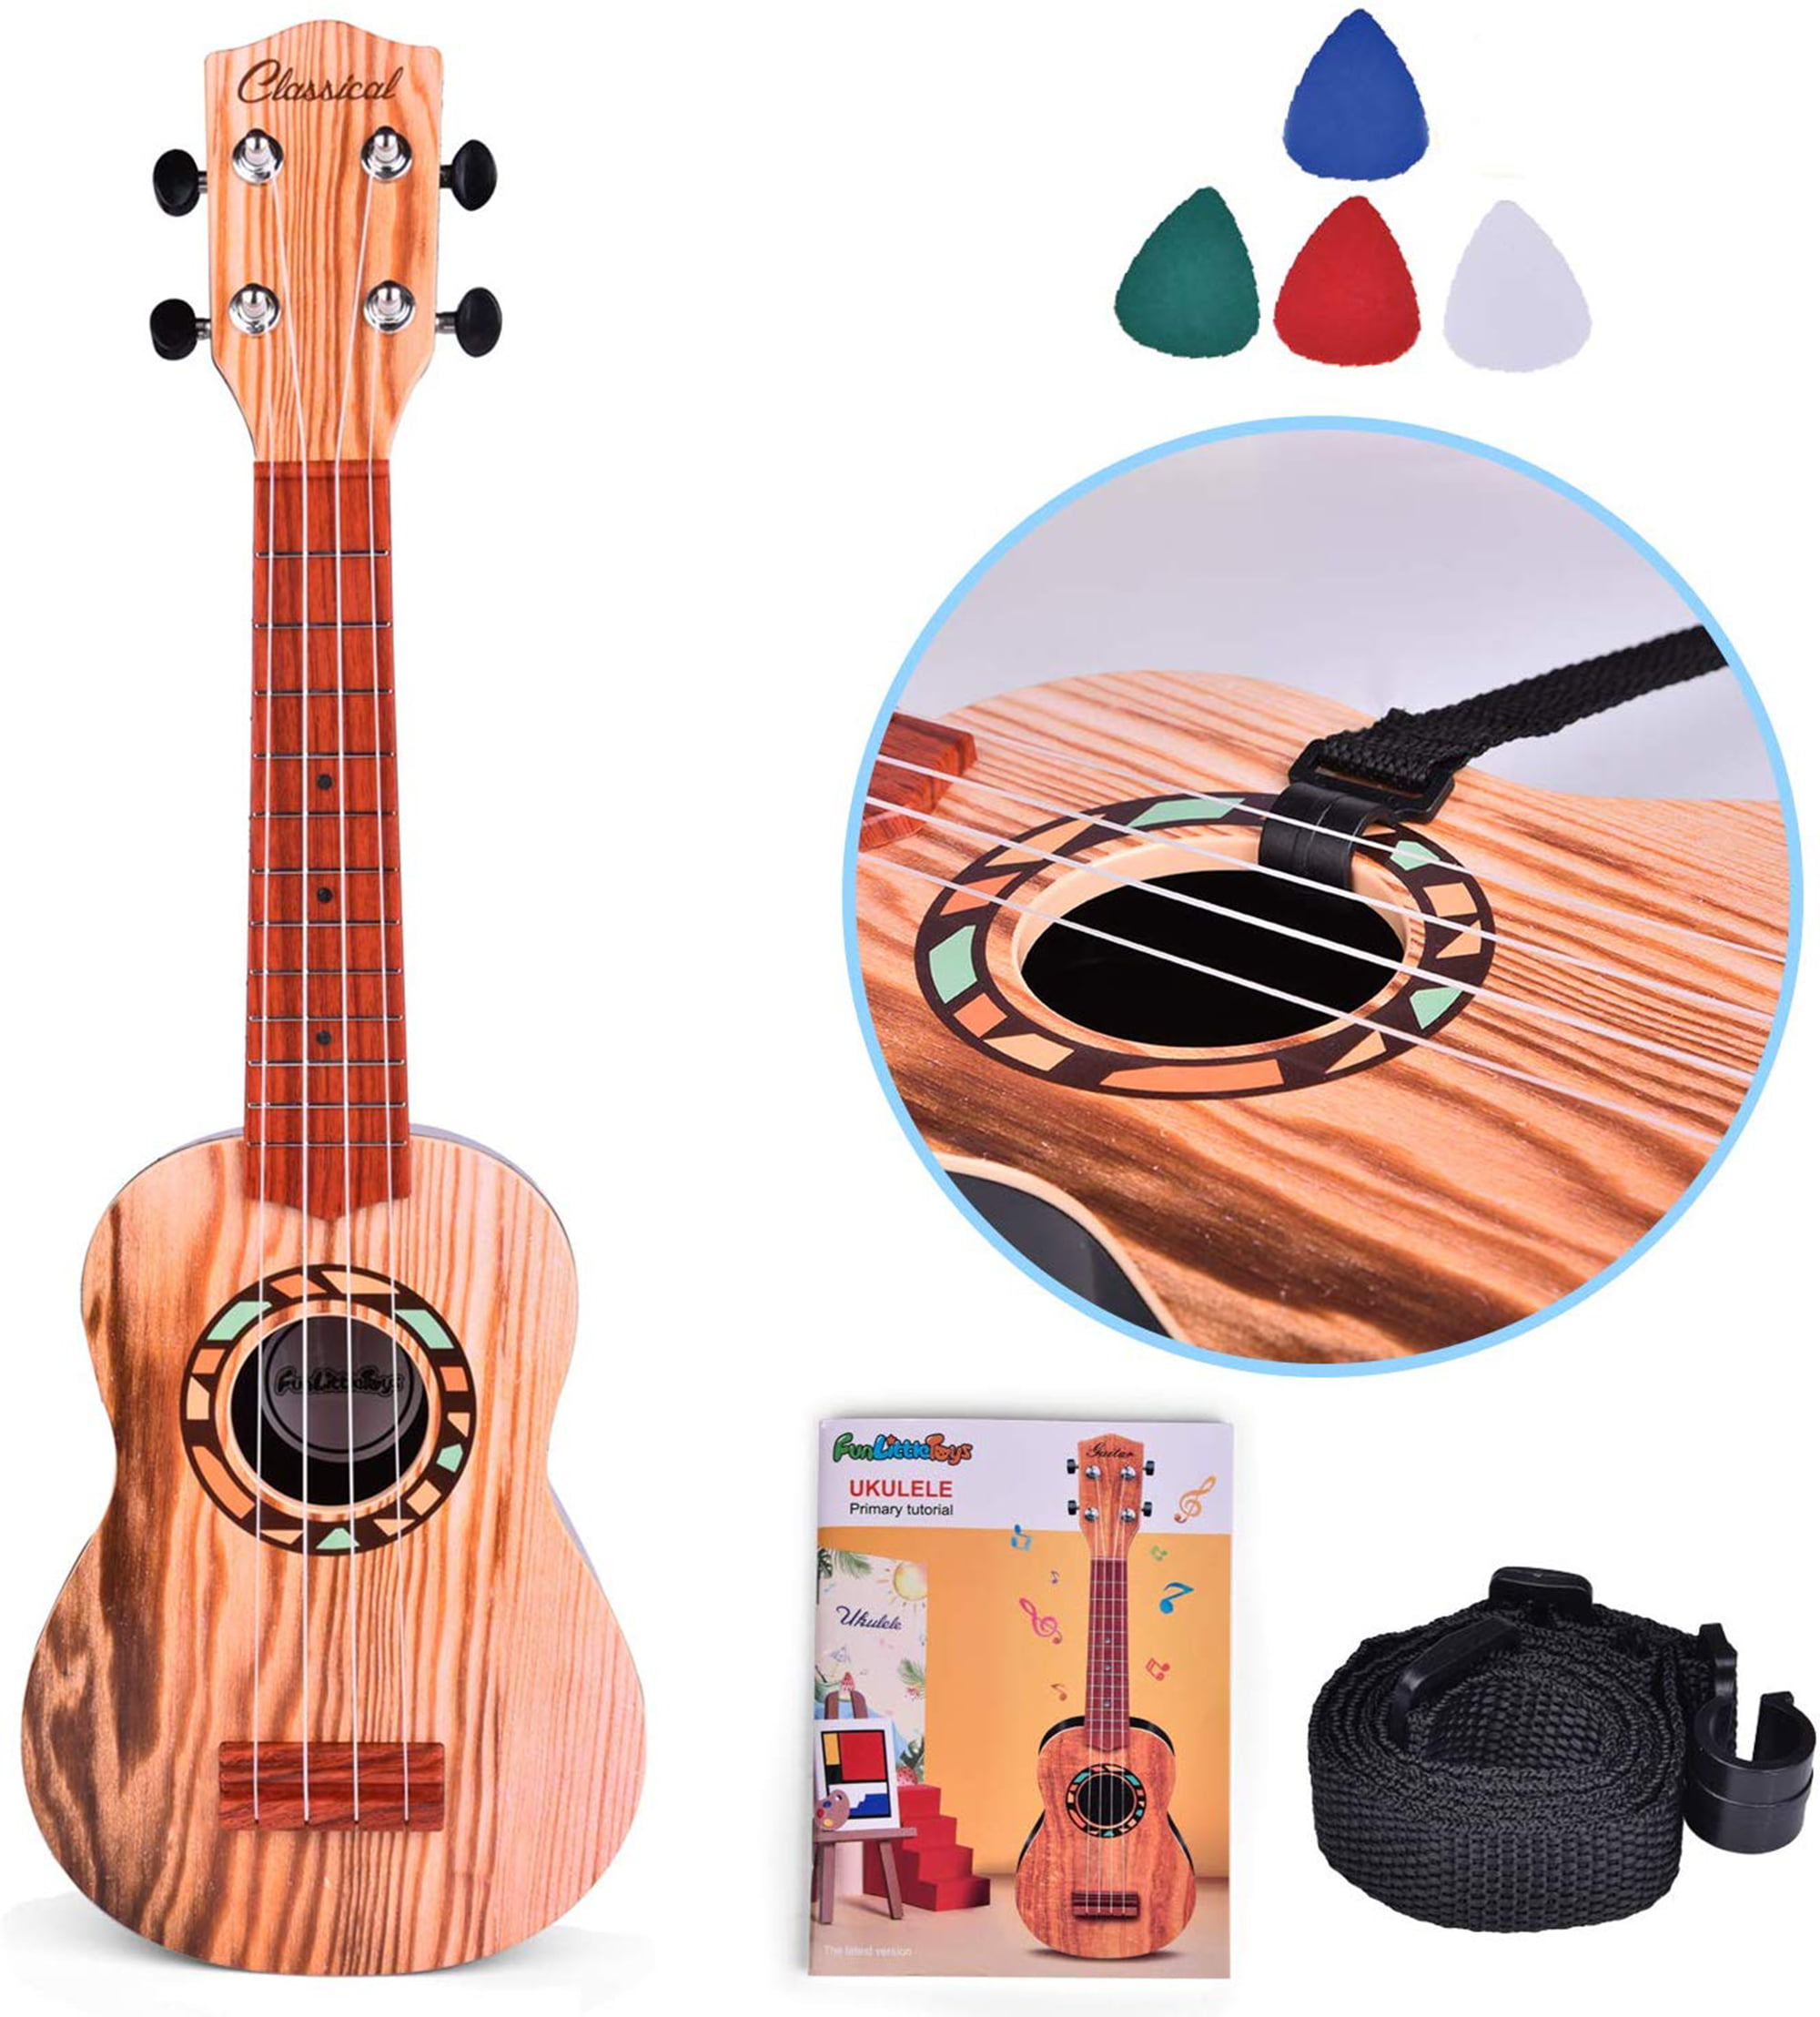 Kids Music & Art Development 4 Strings Guitar Ukulele Musical Instrument Toys 